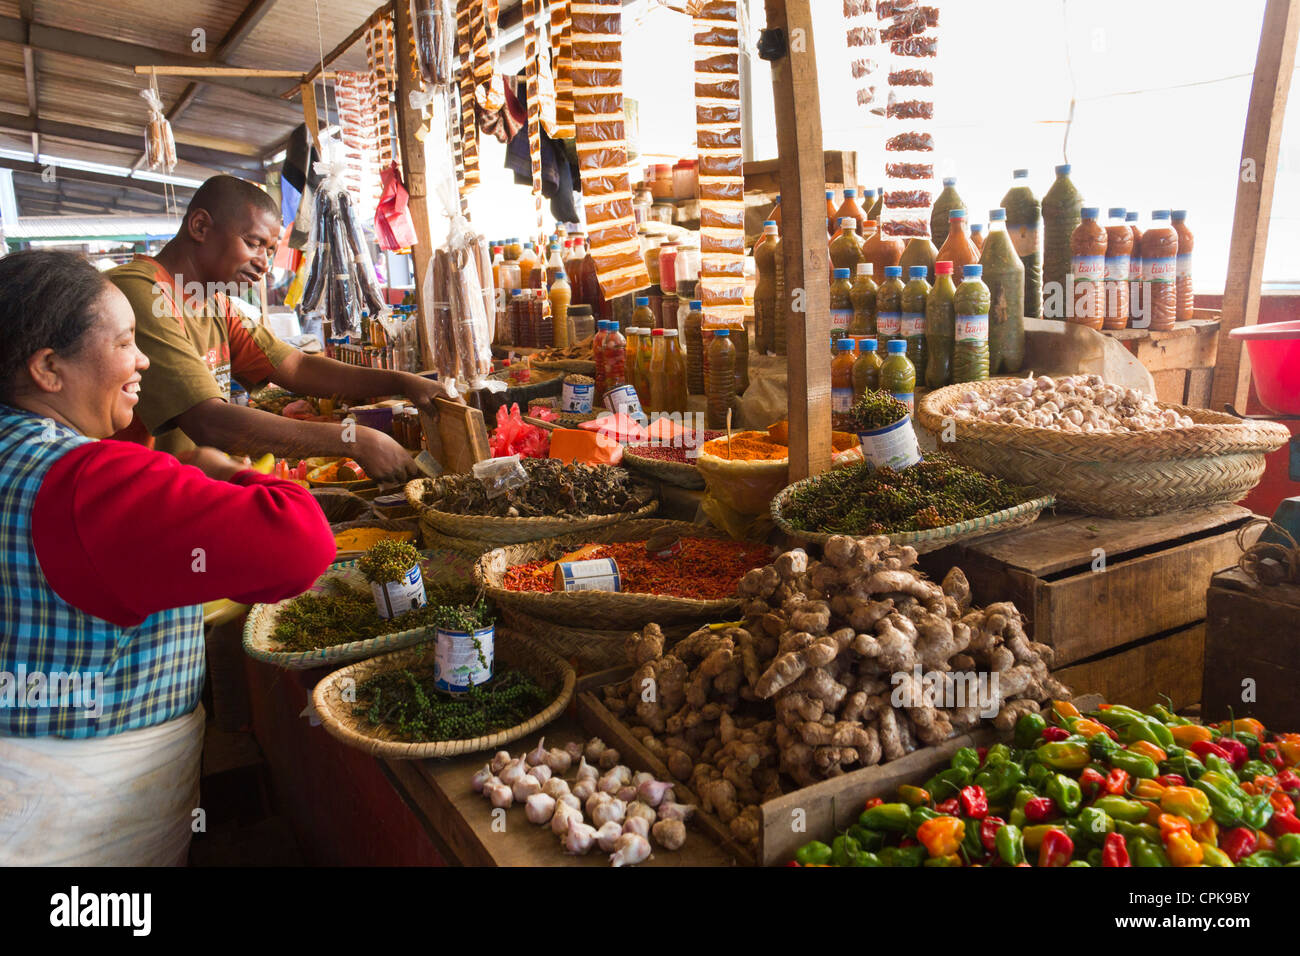 Mann und Frau verkaufen Gemüse und Gewürze, Markt, Antsirabe, Madagaskar  Stockfotografie - Alamy